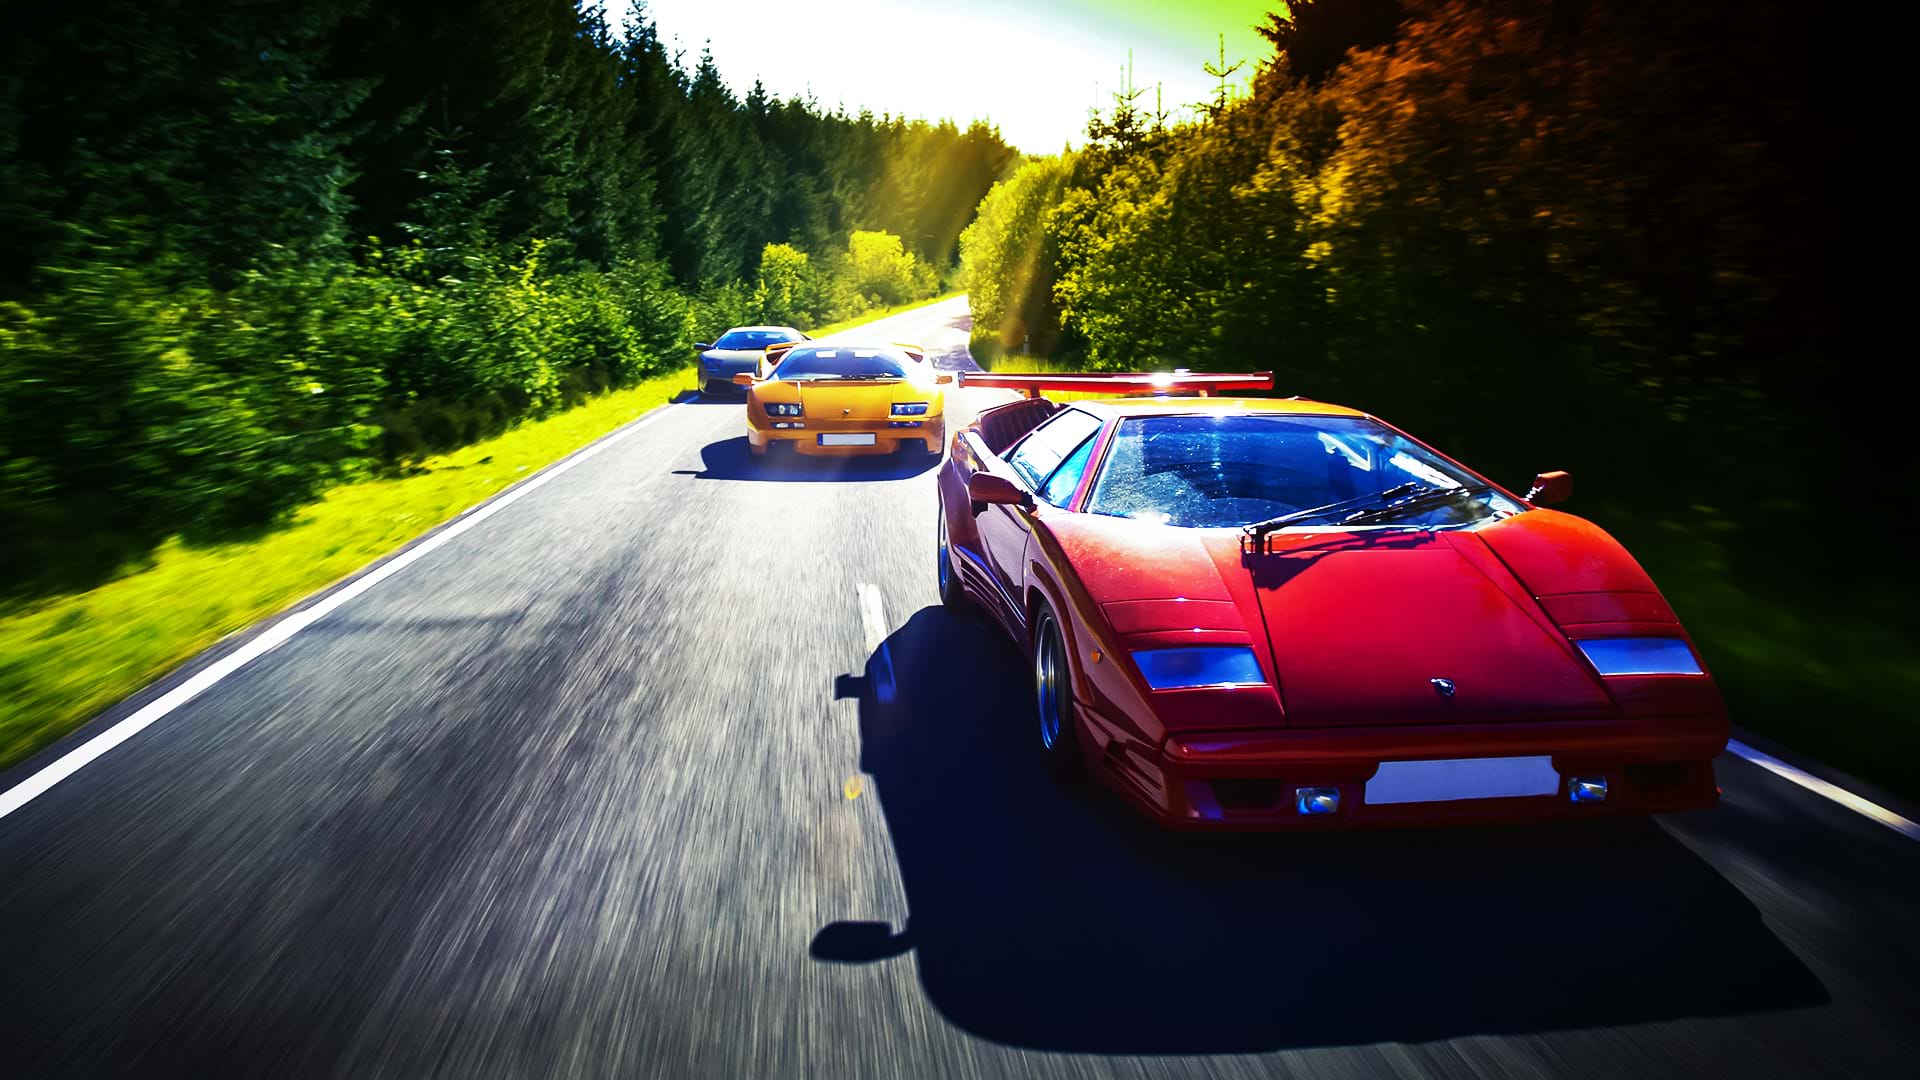 A colorful Lamborghini convoy: Countach 25th Anniversary, Diablo 6.0, and Murciélago, races along a scenic road on a bright day.